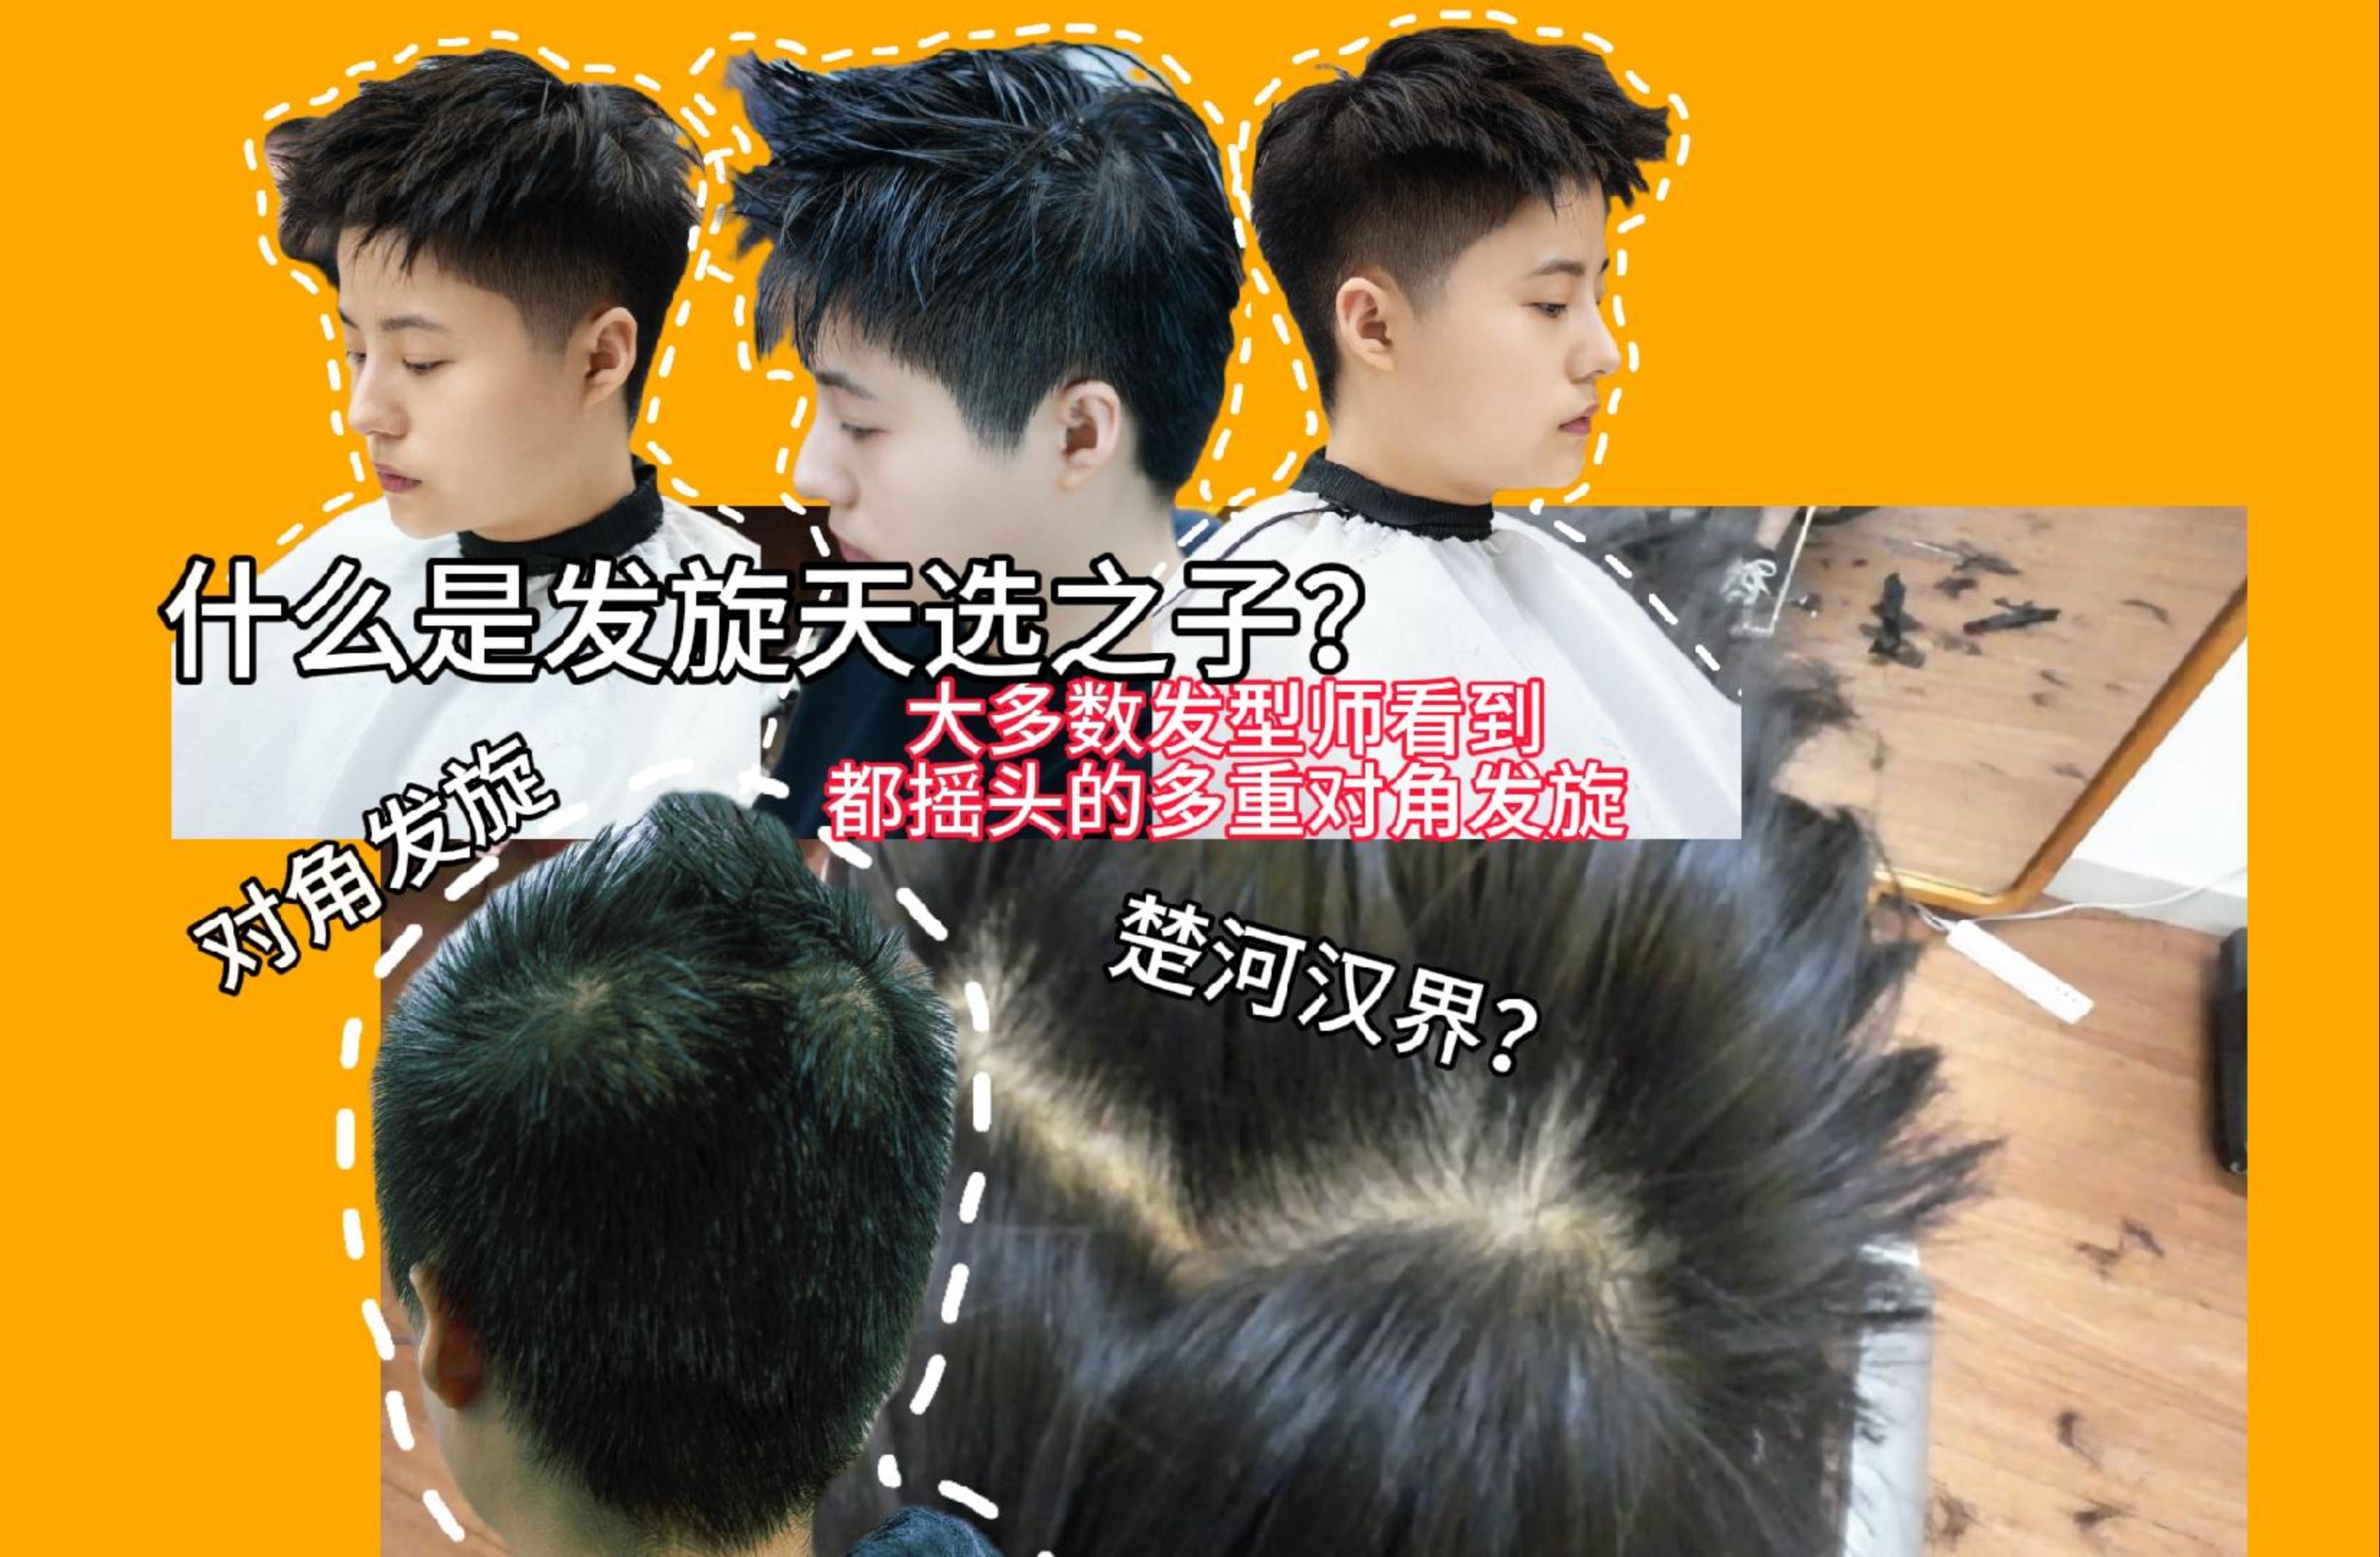 7月21日 川同学的发旋天选之子 对角发旋 多重发旋怎么设计发型?